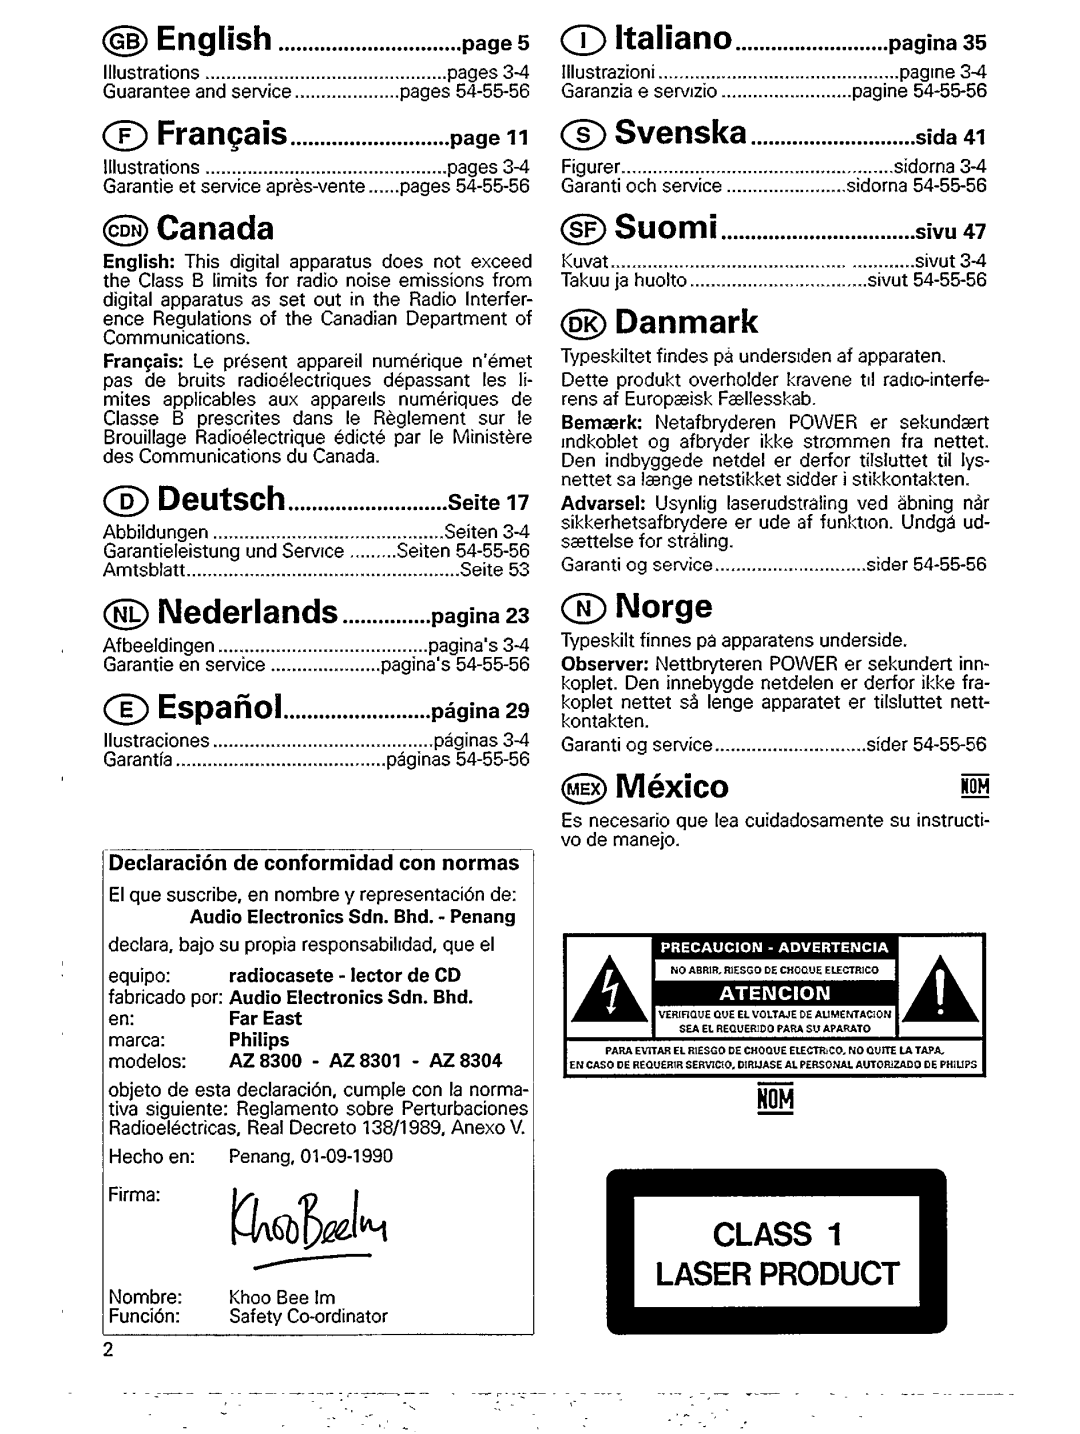 Philips AZ 8301, AZ 8300, AZ 8304 manual 